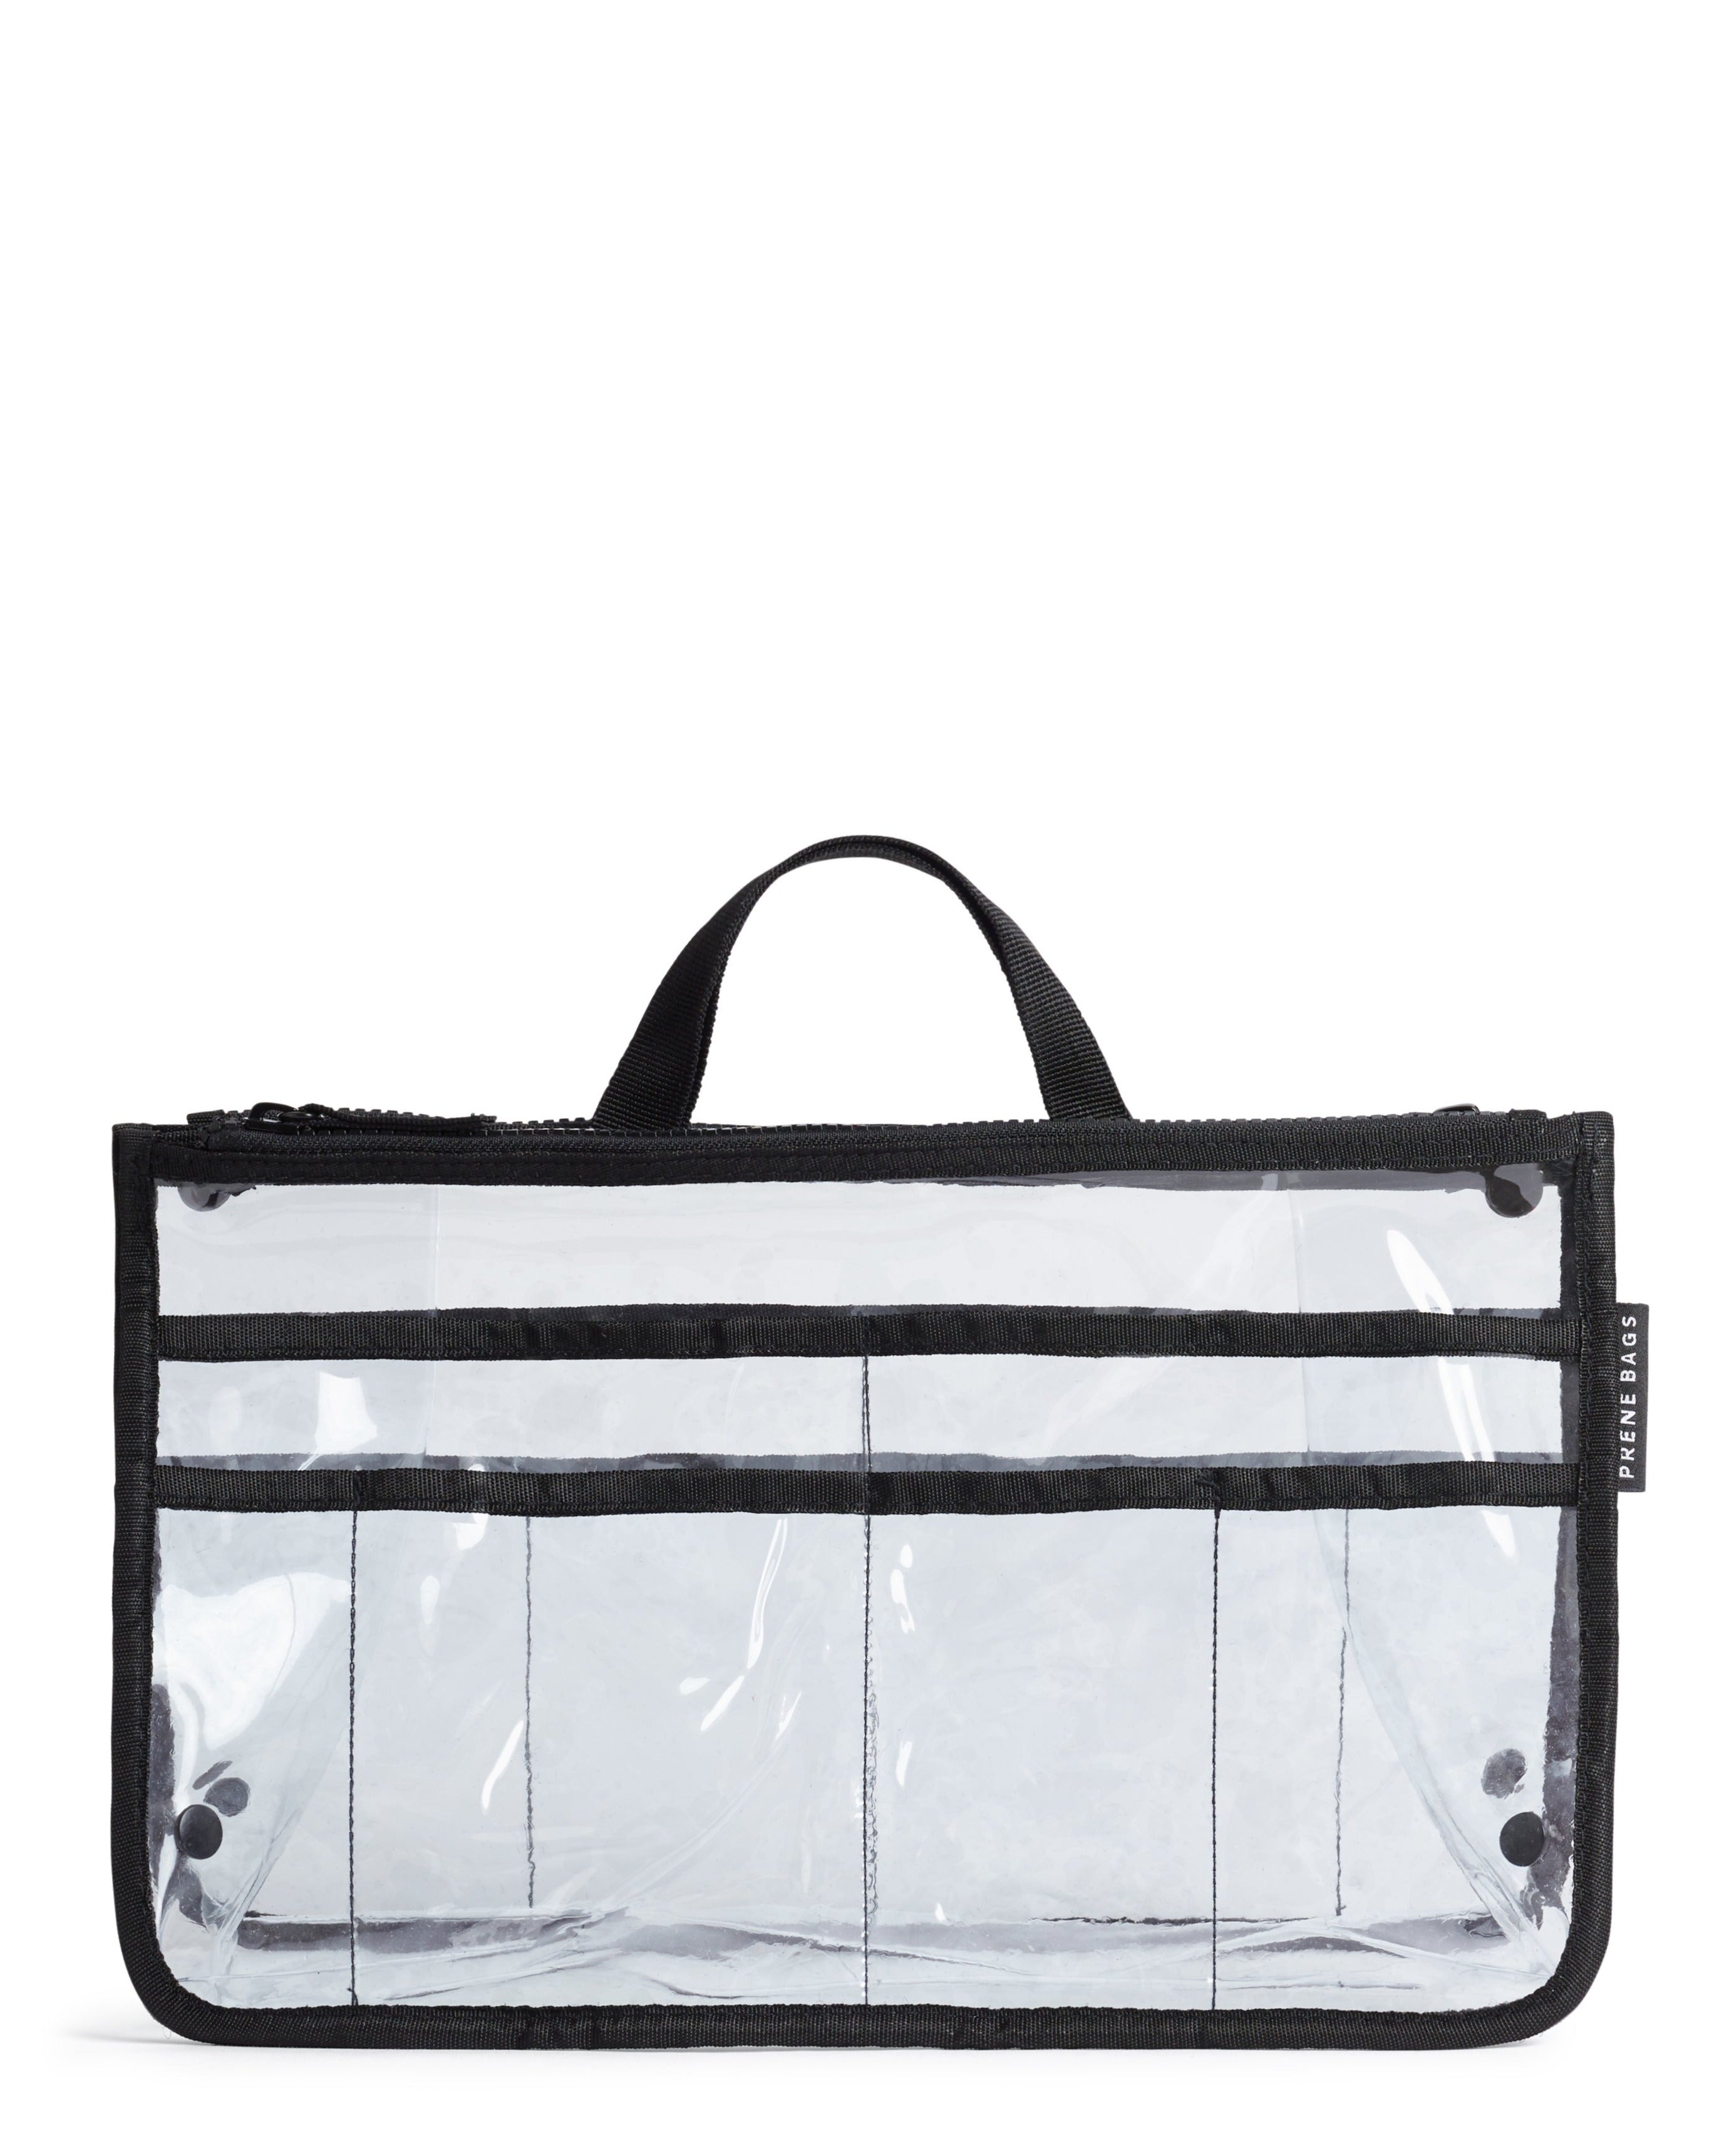 Bag Organizer / Organiser Insert (CLEAR) – Prene